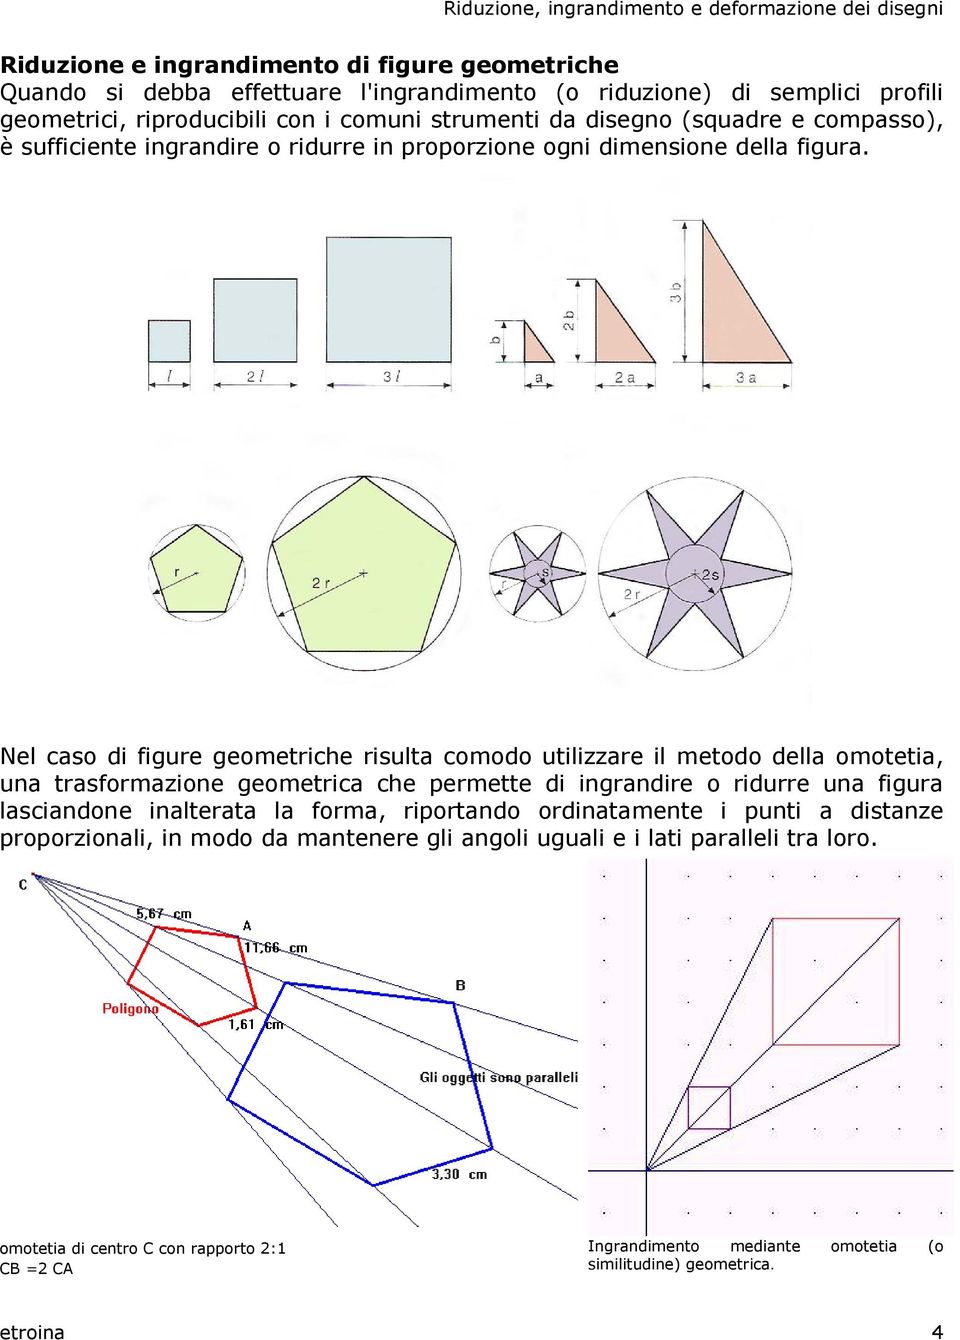 Nel caso di figure geometriche risulta comodo utilizzare il metodo della omotetia, una trasformazione geometrica che permette di ingrandire o ridurre una figura lasciandone